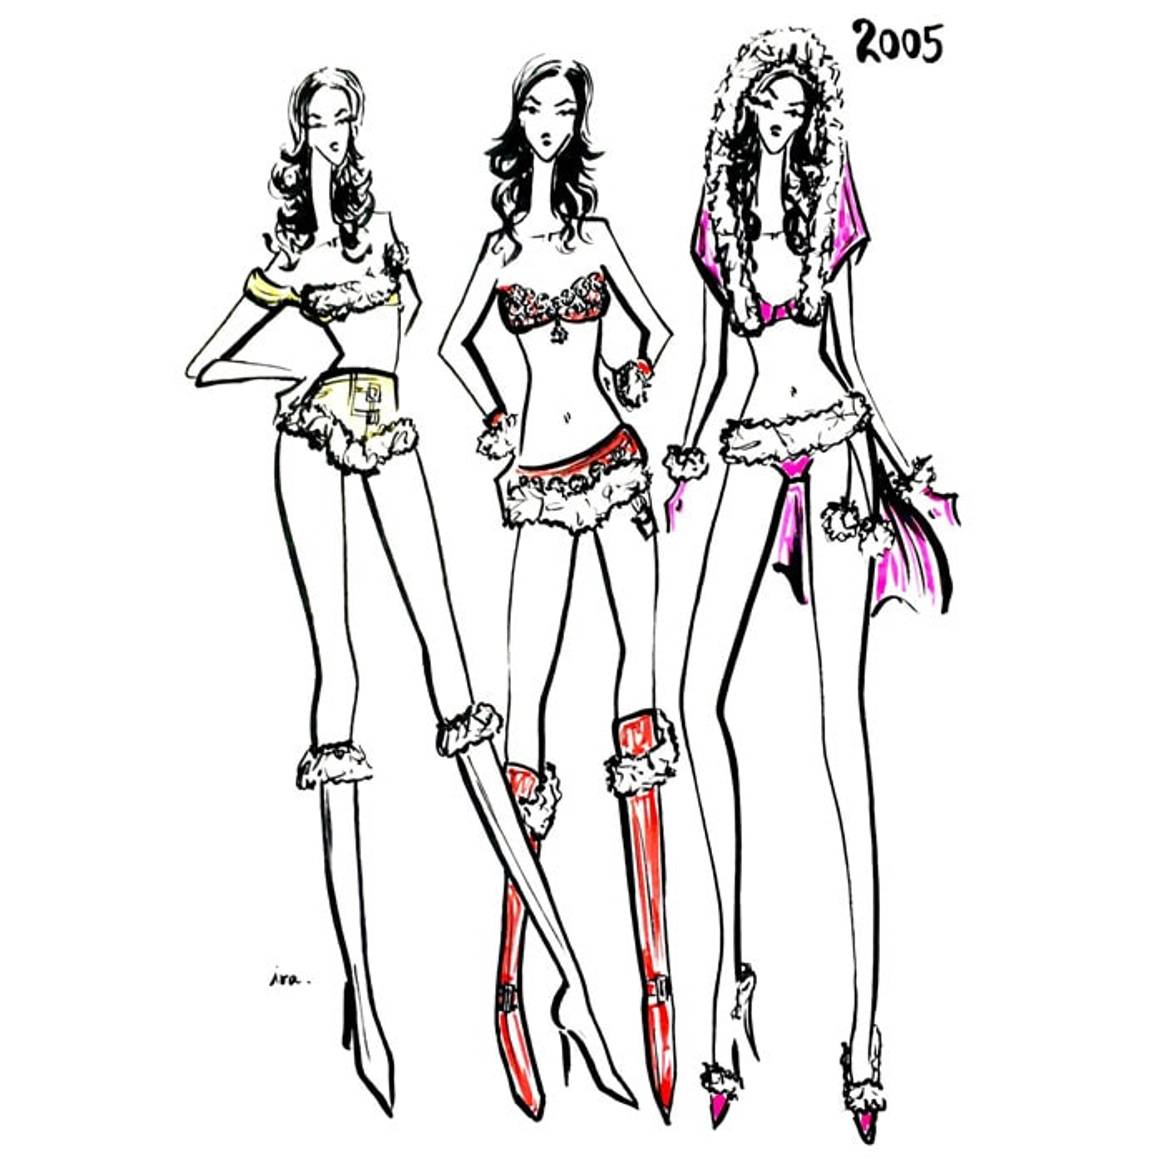 Desfile de moda anual de Victoria's Secret: Disfrútalo mientras dure